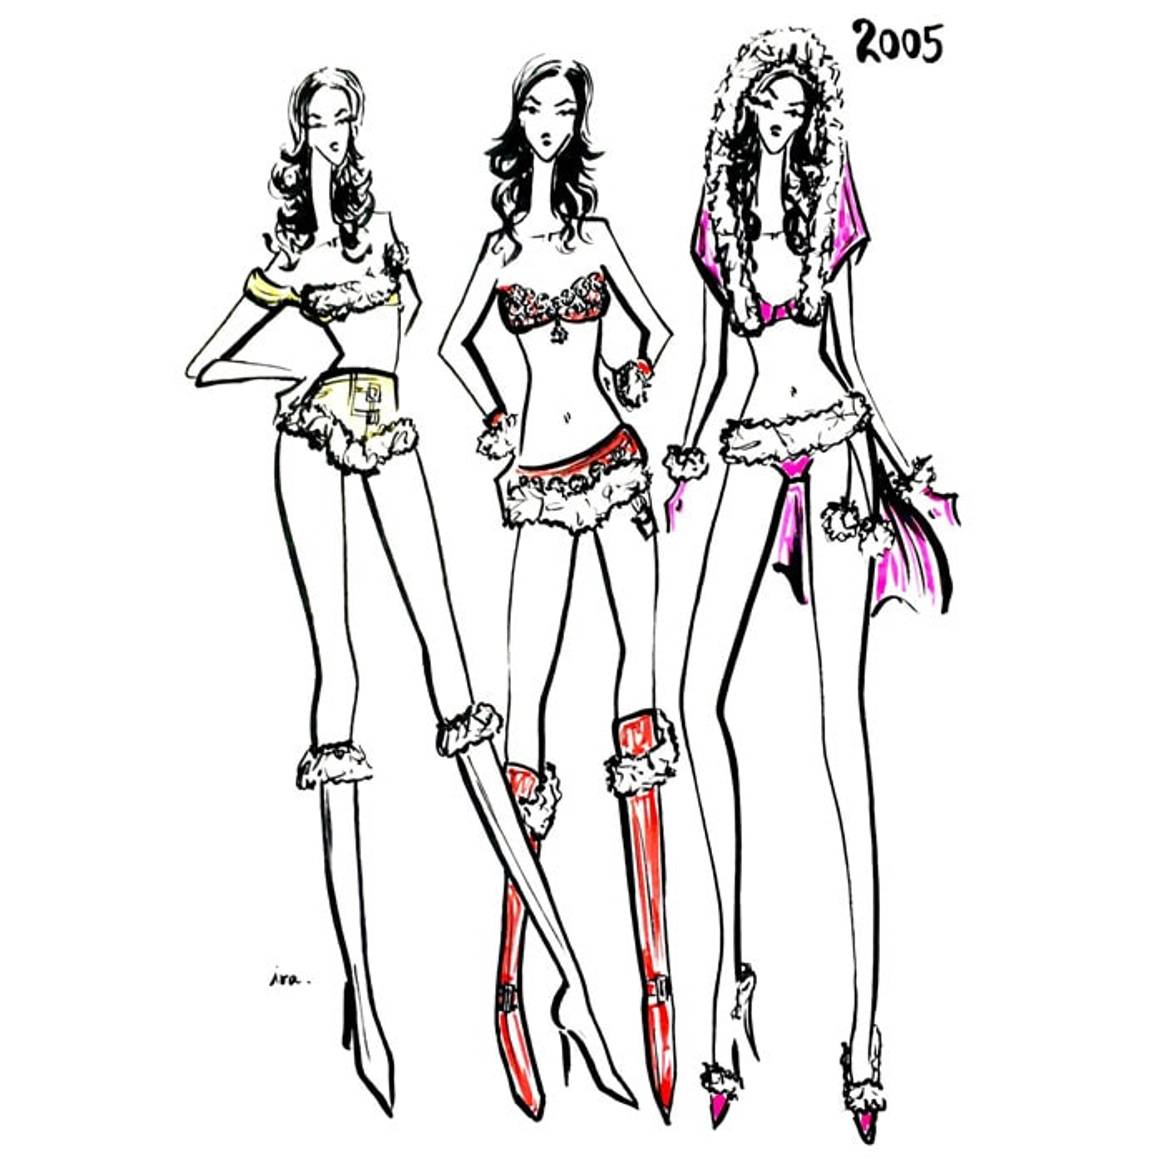 Desfile de moda anual de Victoria's Secret: Disfrútalo mientras dure